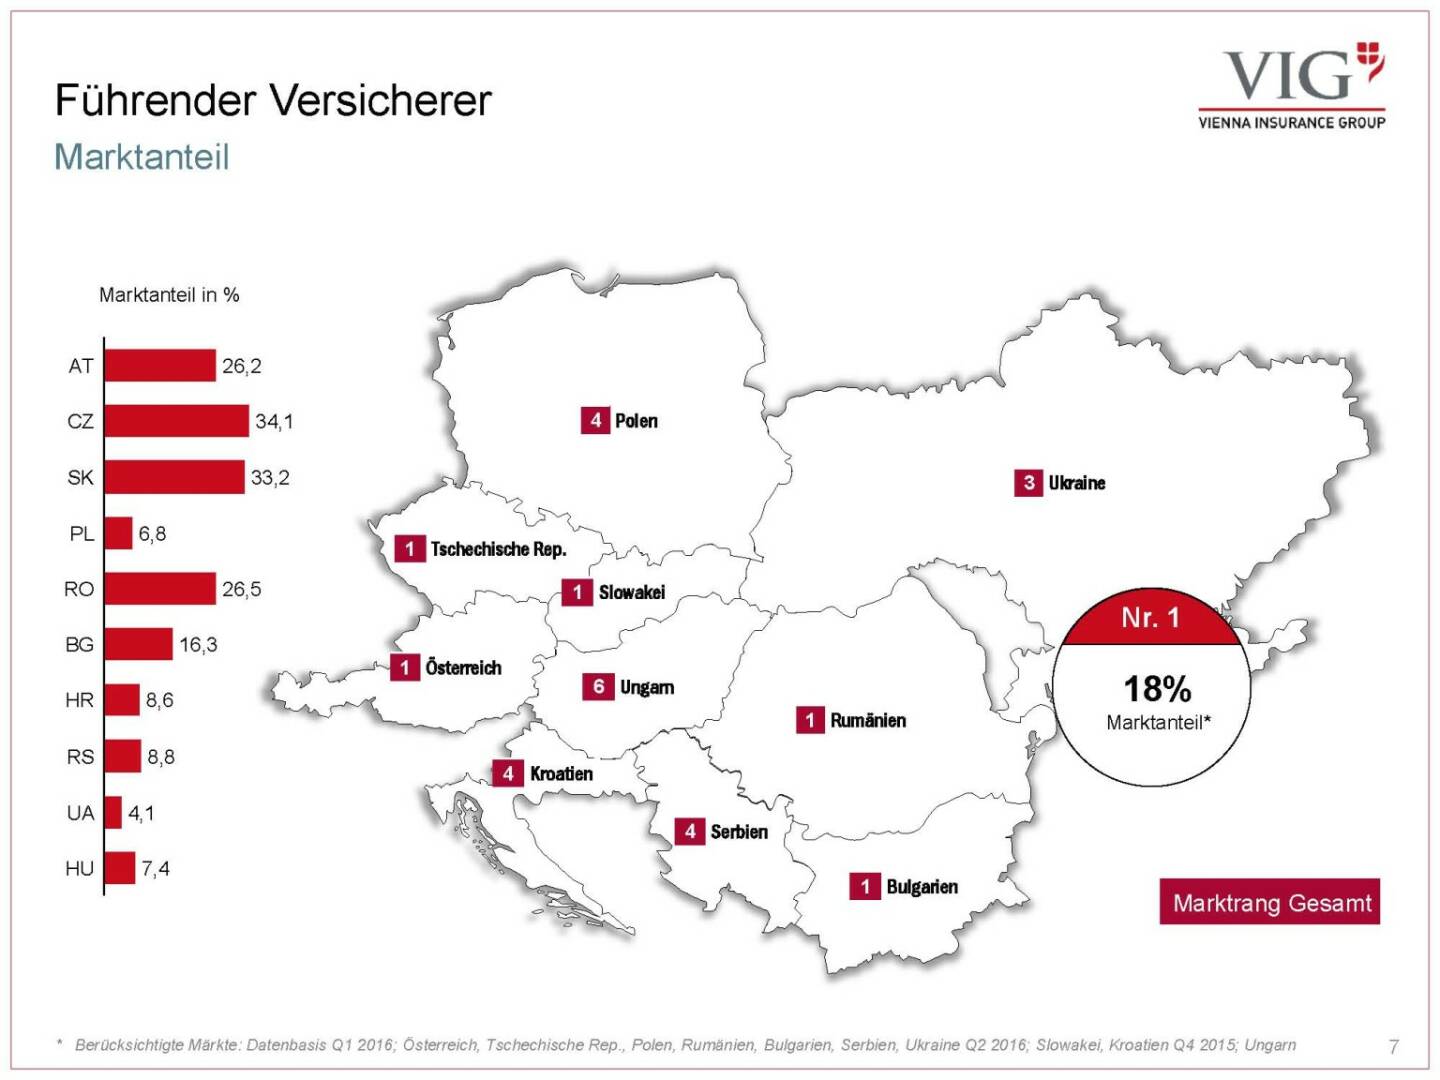 Vienna Insurance Group - Führender Versicherer